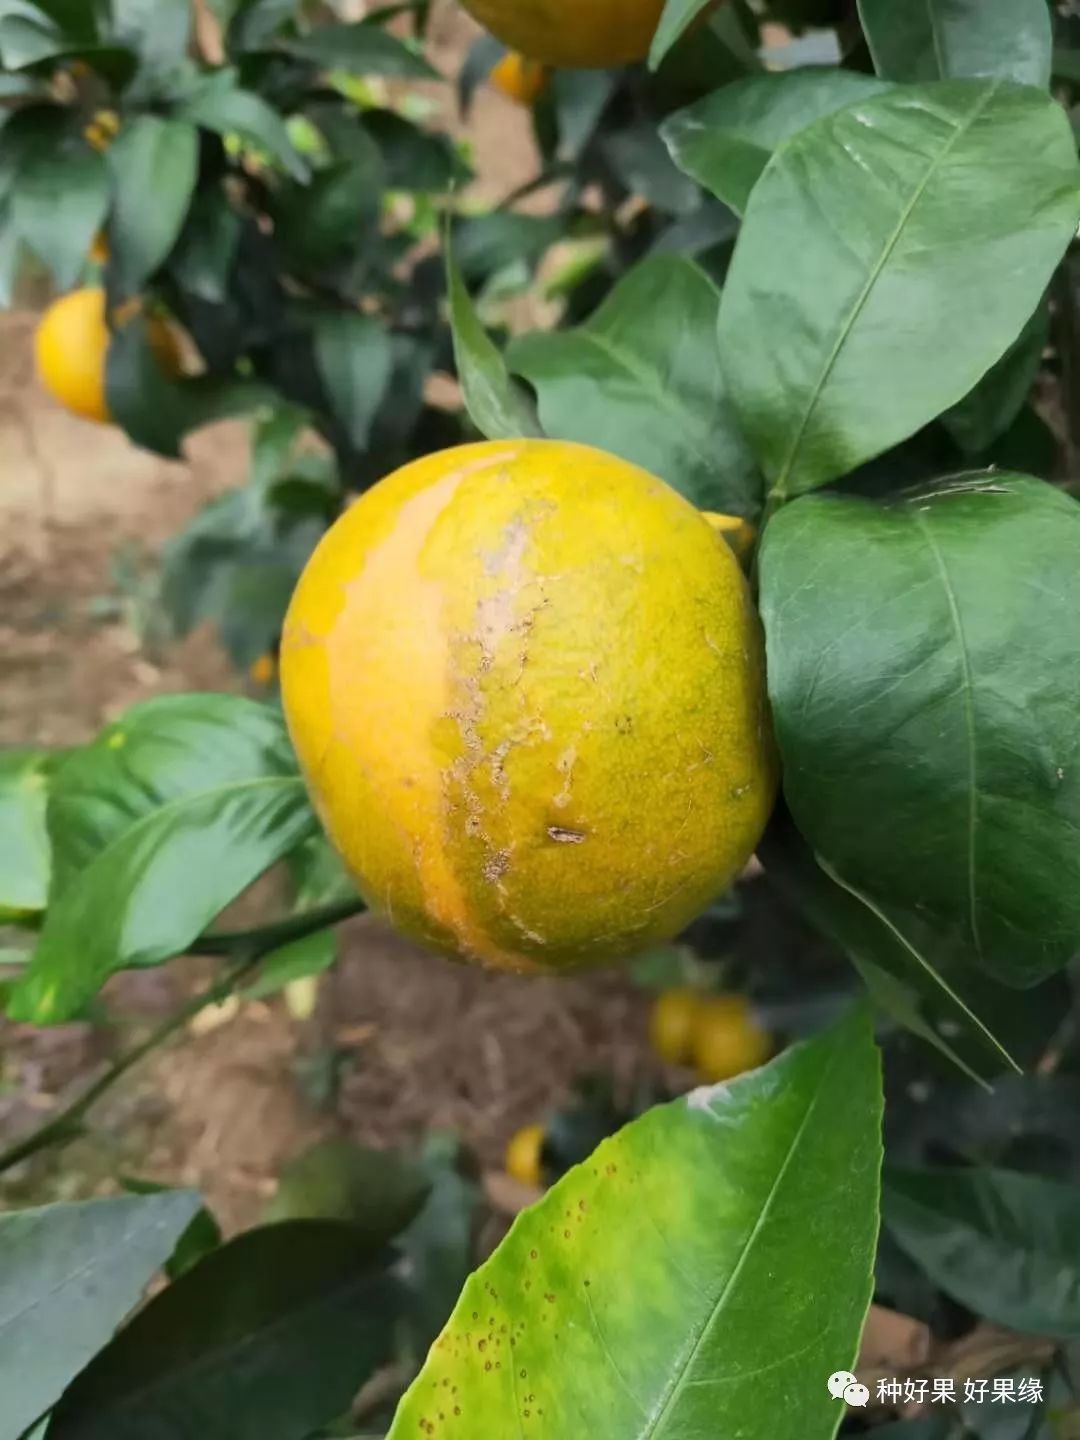 柑橘药害+肥害中毒的挽救措施